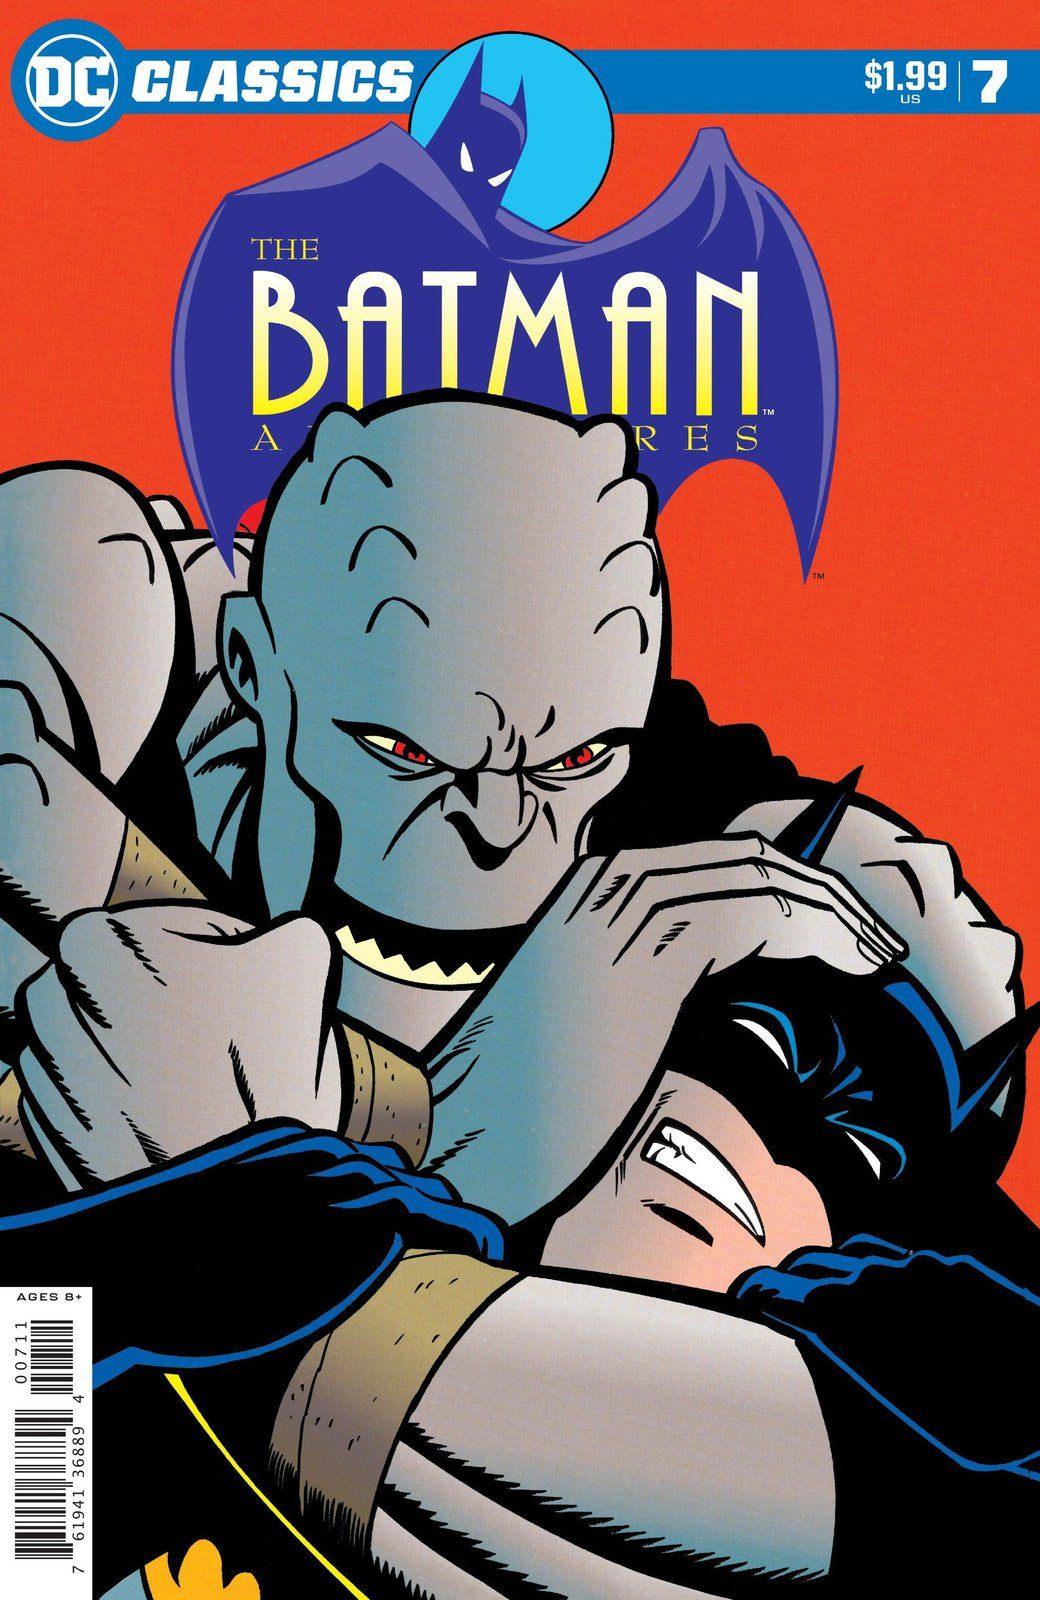 DC CLASSICS THE BATMAN ADVENTURES #7 (SHIPS 12-01-20) - PCKComics.com